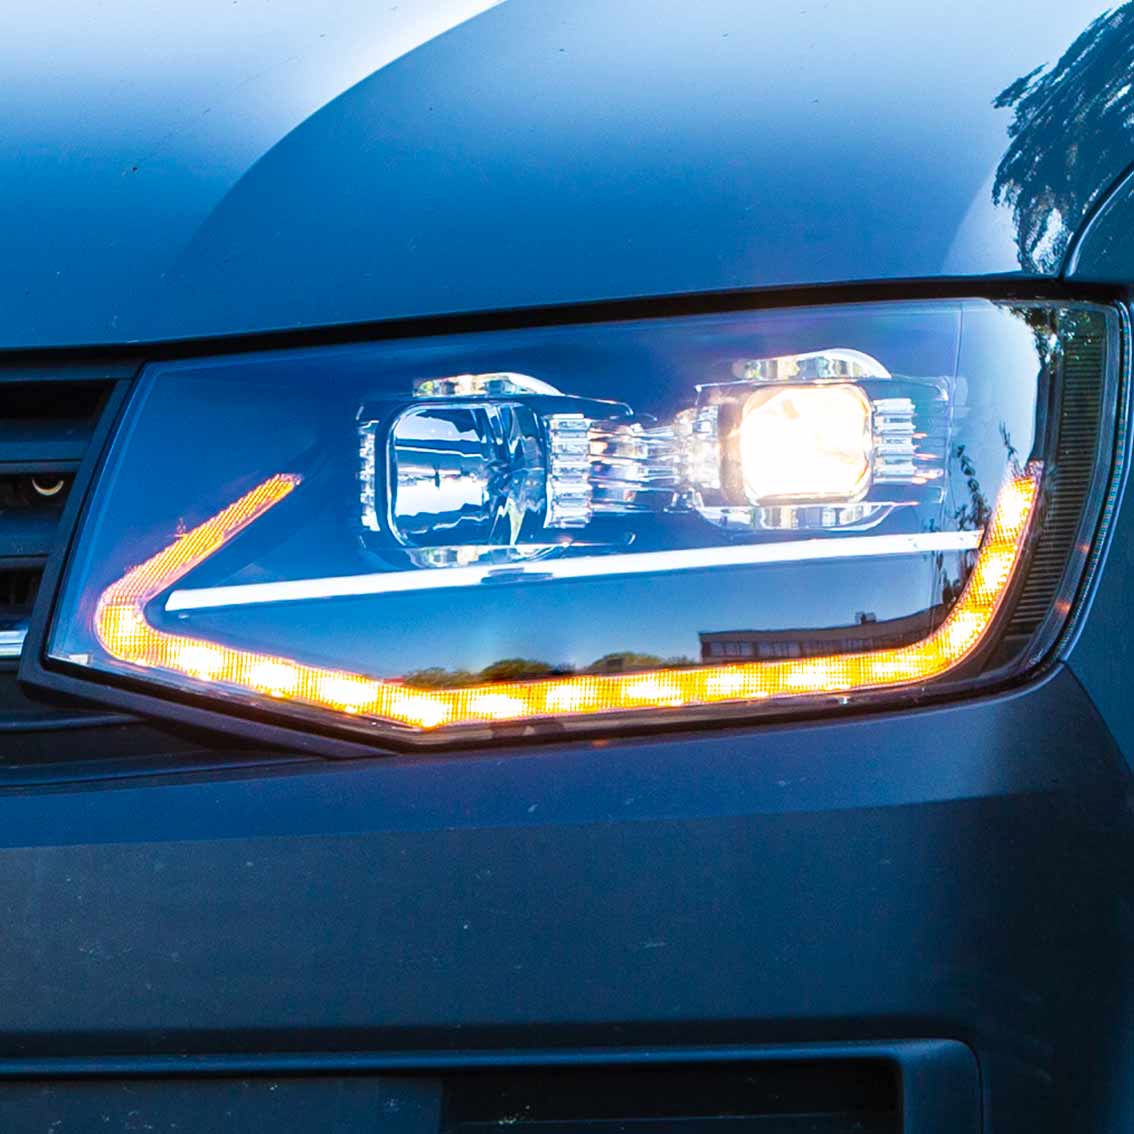 LED LightBar Rückleuchten dynamische Blinker rot für VW T6.1 ab 2020, Für  VW T6, Für VW, Beleuchtung